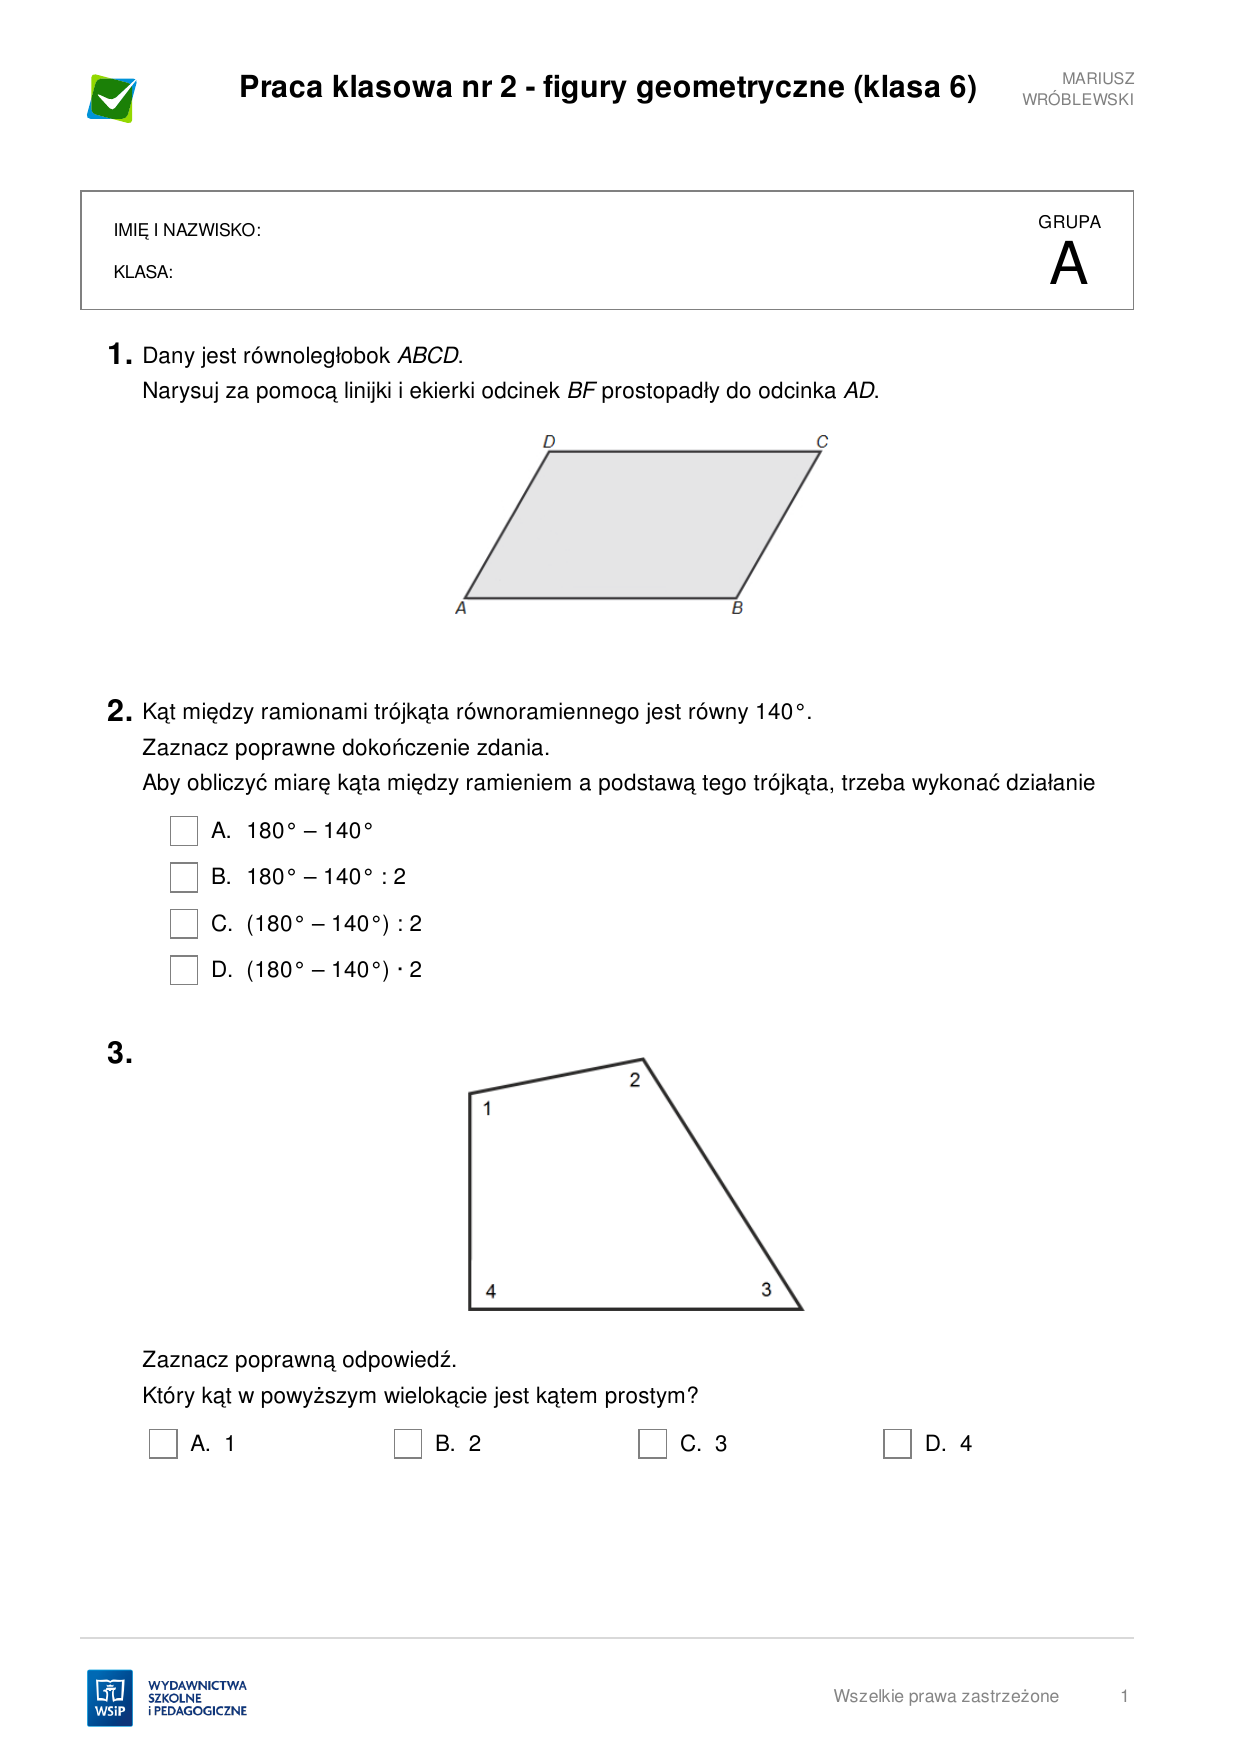 Pola Figur Klasa 6 Sprawdzian Praca klasowa nr 2 - figury geometryczne (klasa 6) 3.